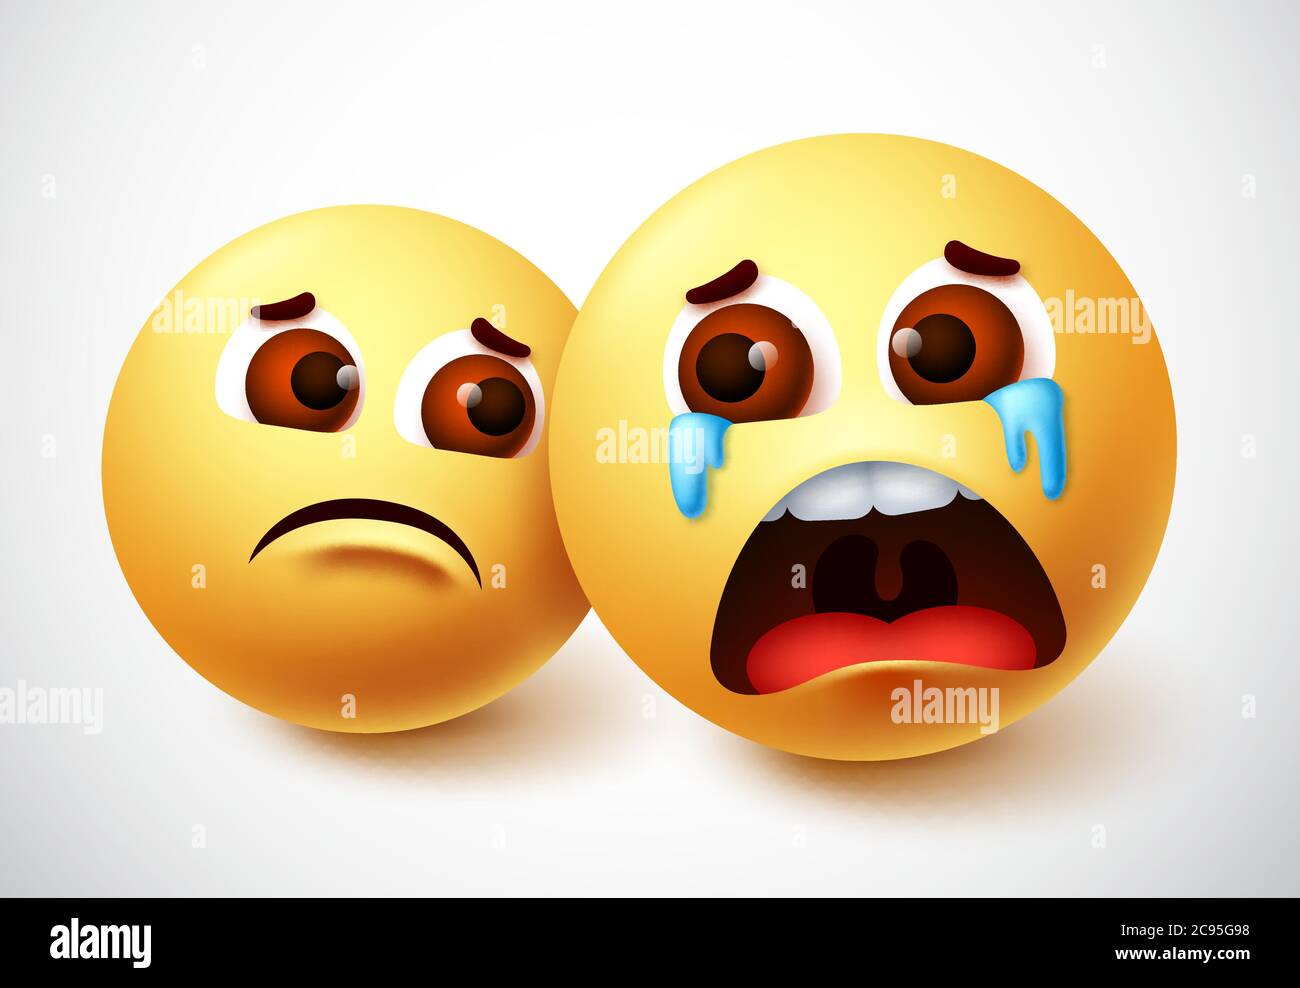 Sadness and weaping emoji